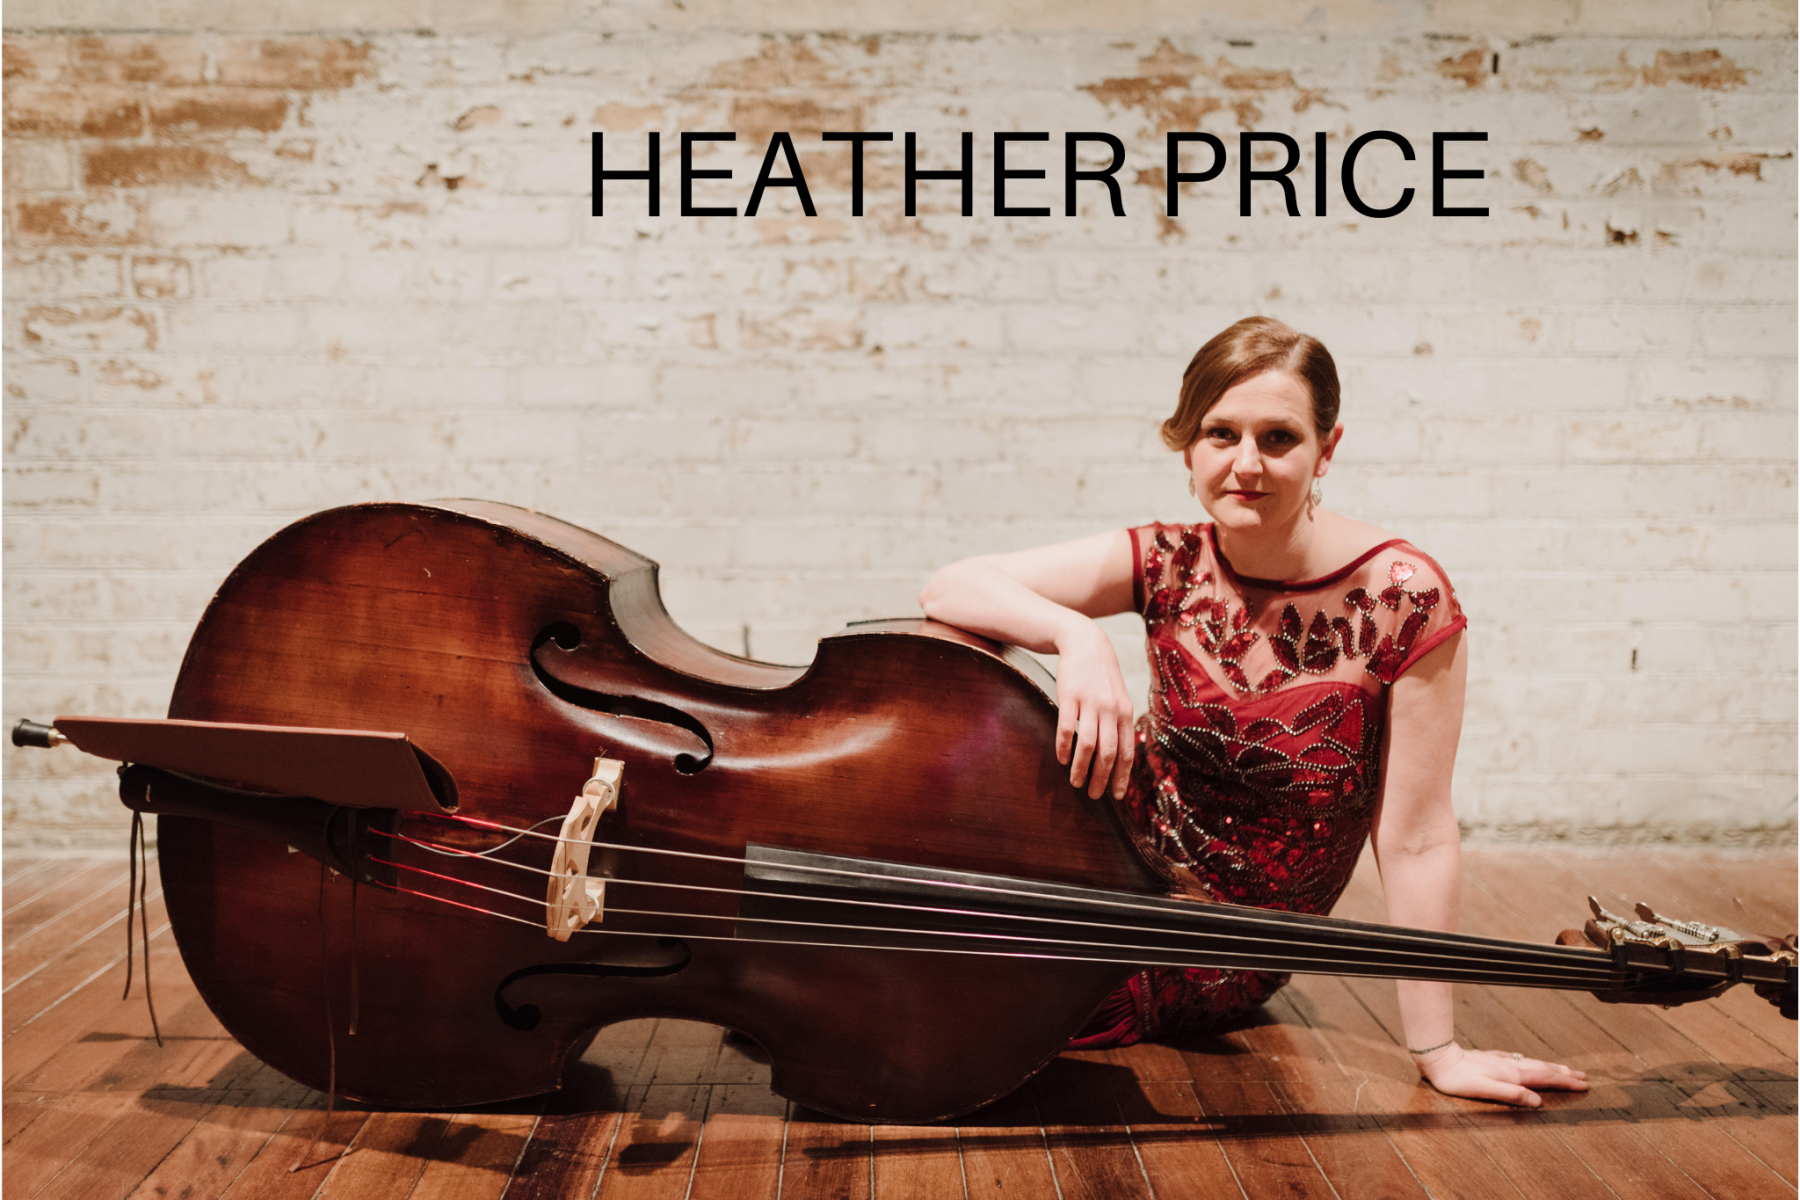 Heather Price